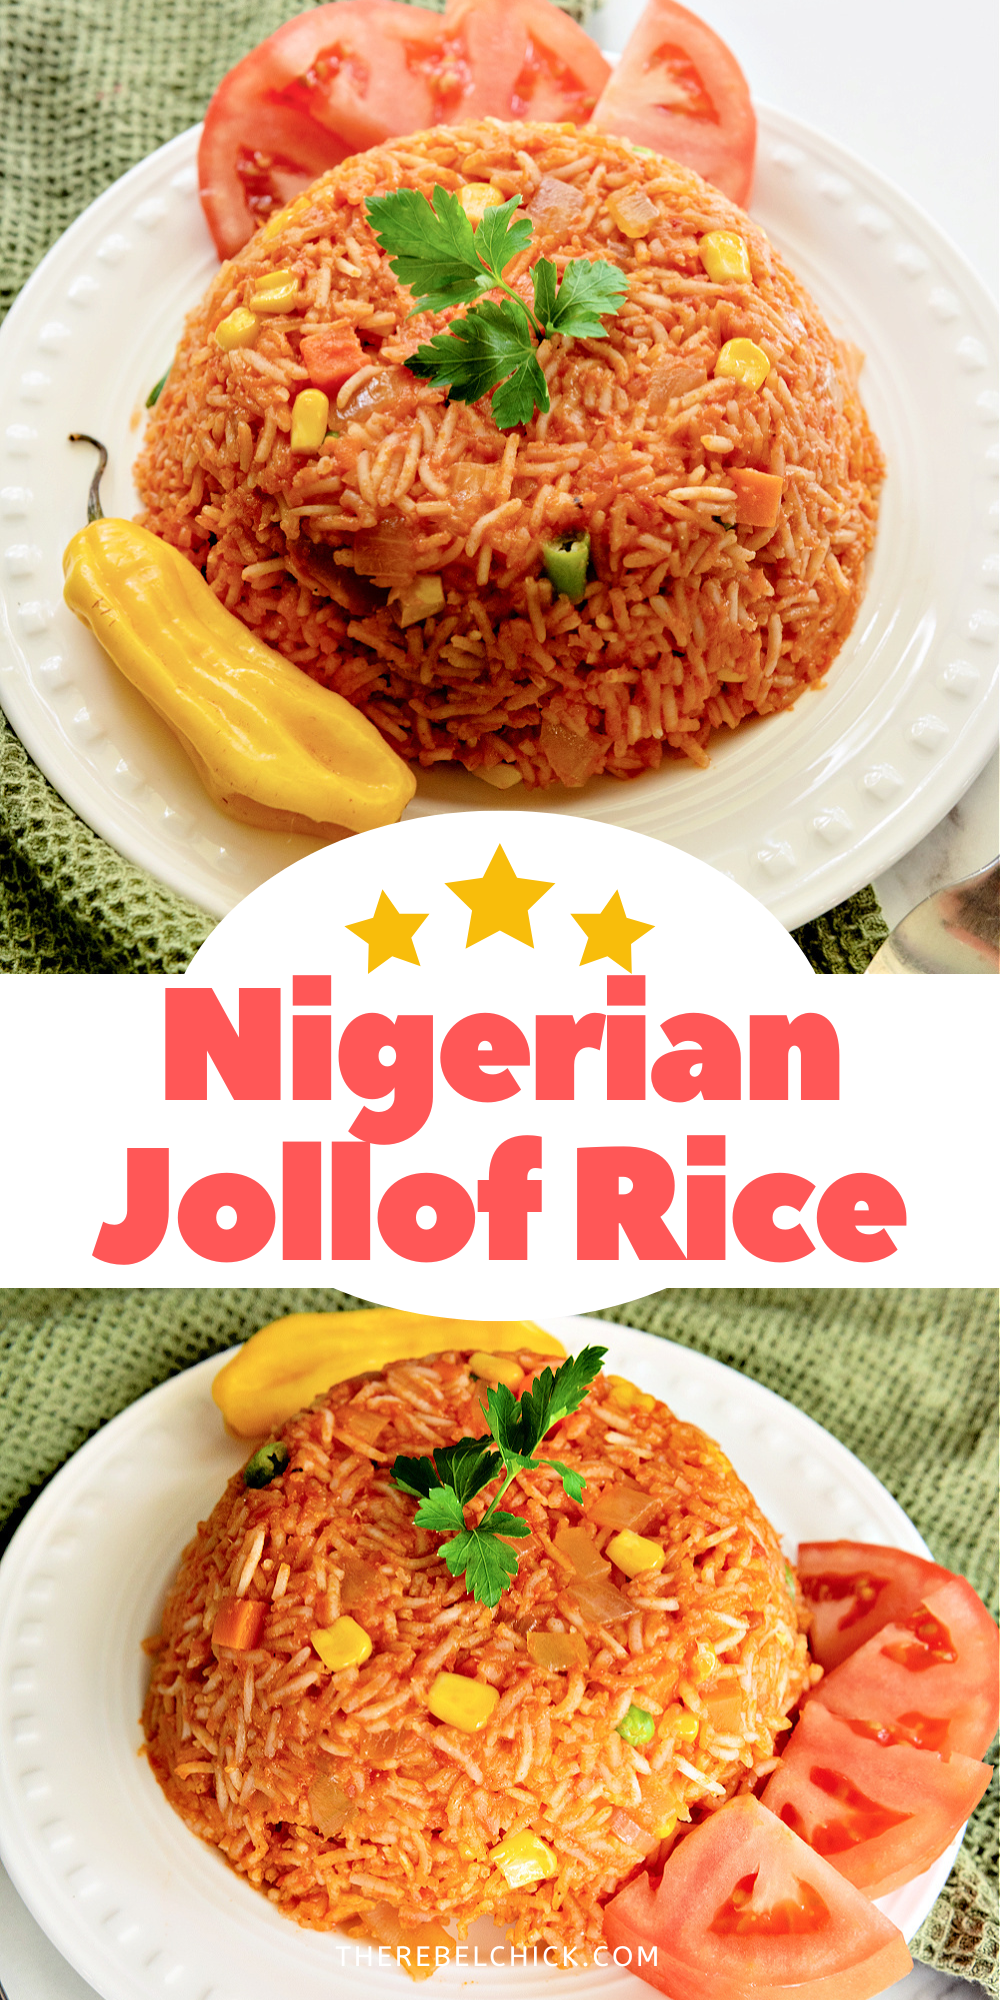 Nigerian Jollof Rice recipe